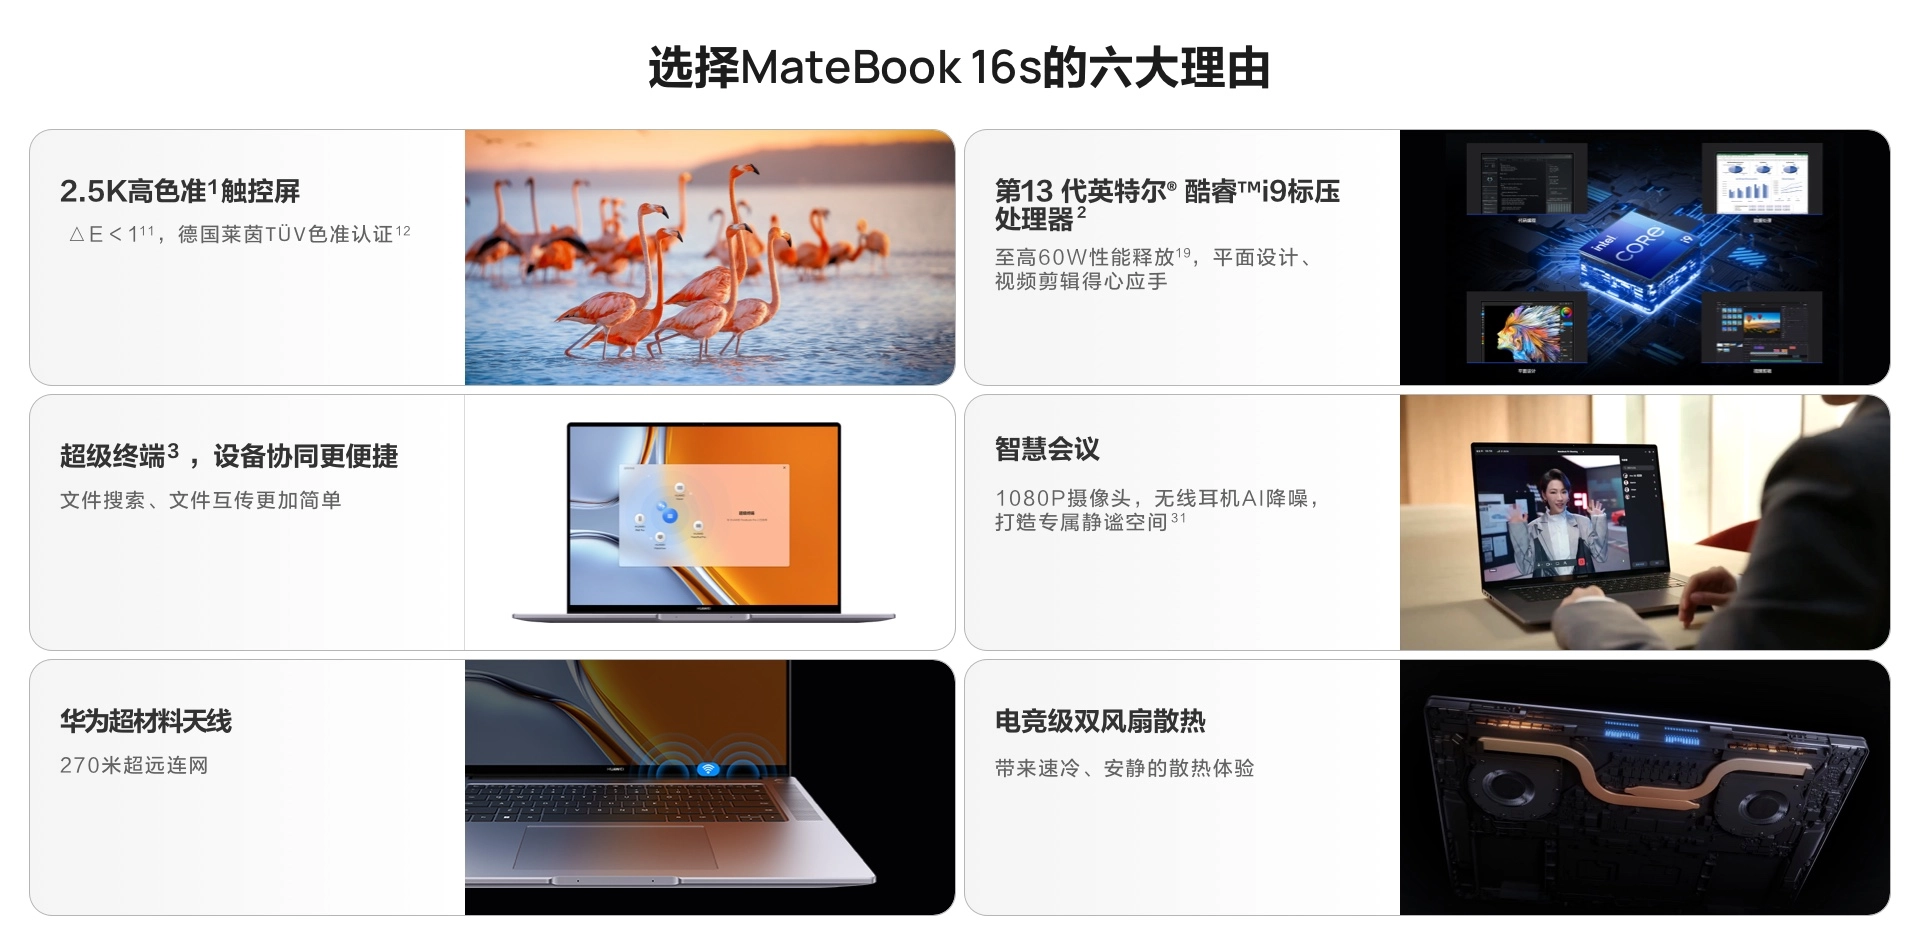 便携式计算机 华为/Huawei MateBook 16S 酷睿 I7-13700H 32GB 1TB  集成显卡   Windows 11   2年